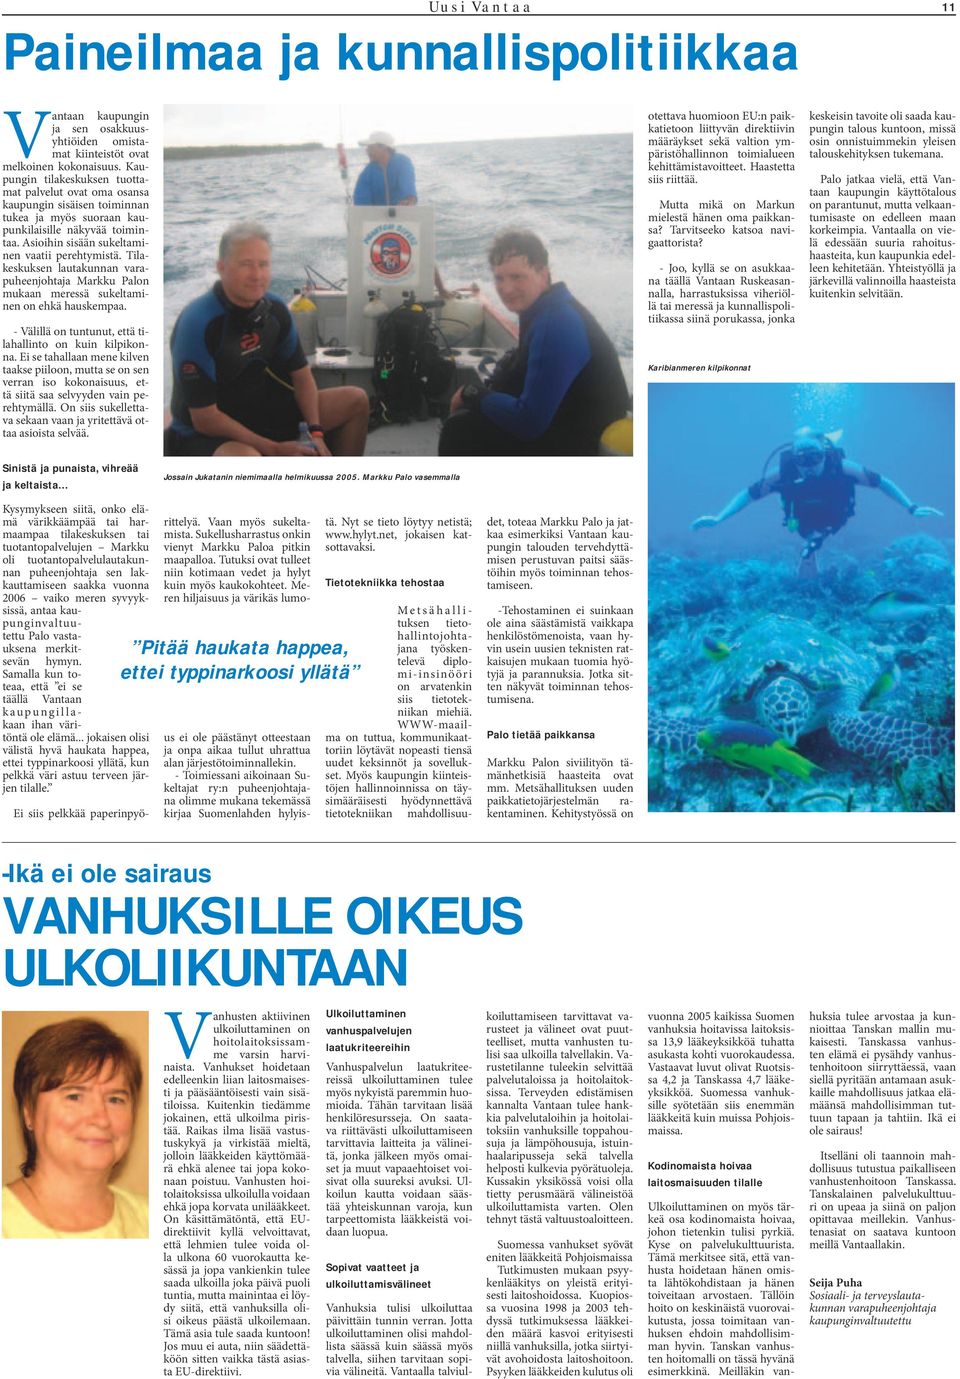 Tilakeskuksen lautakunnan varapuheenjohtaja Markku Palon mukaan meressä sukeltaminen on ehkä hauskempaa. - Välillä on tuntunut, että tilahallinto on kuin kilpikonna.